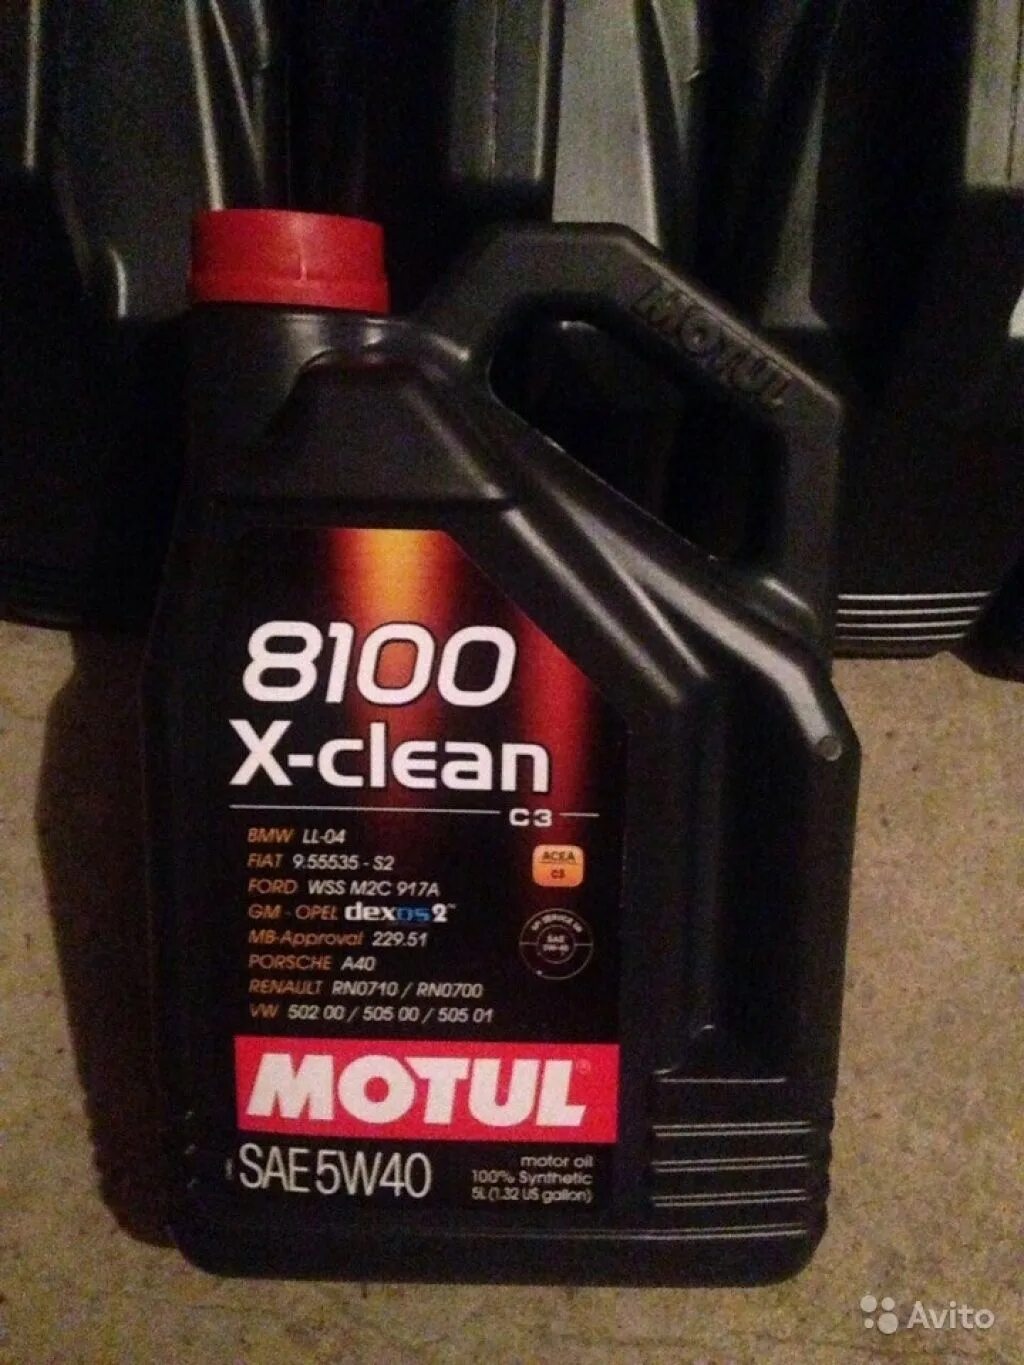 Motul 8100 x-clean 5w40. 8100 X-clean SAE 5w 40. Motul x-clean 5w40. Motul 8100 x-clean 5w40 4л.